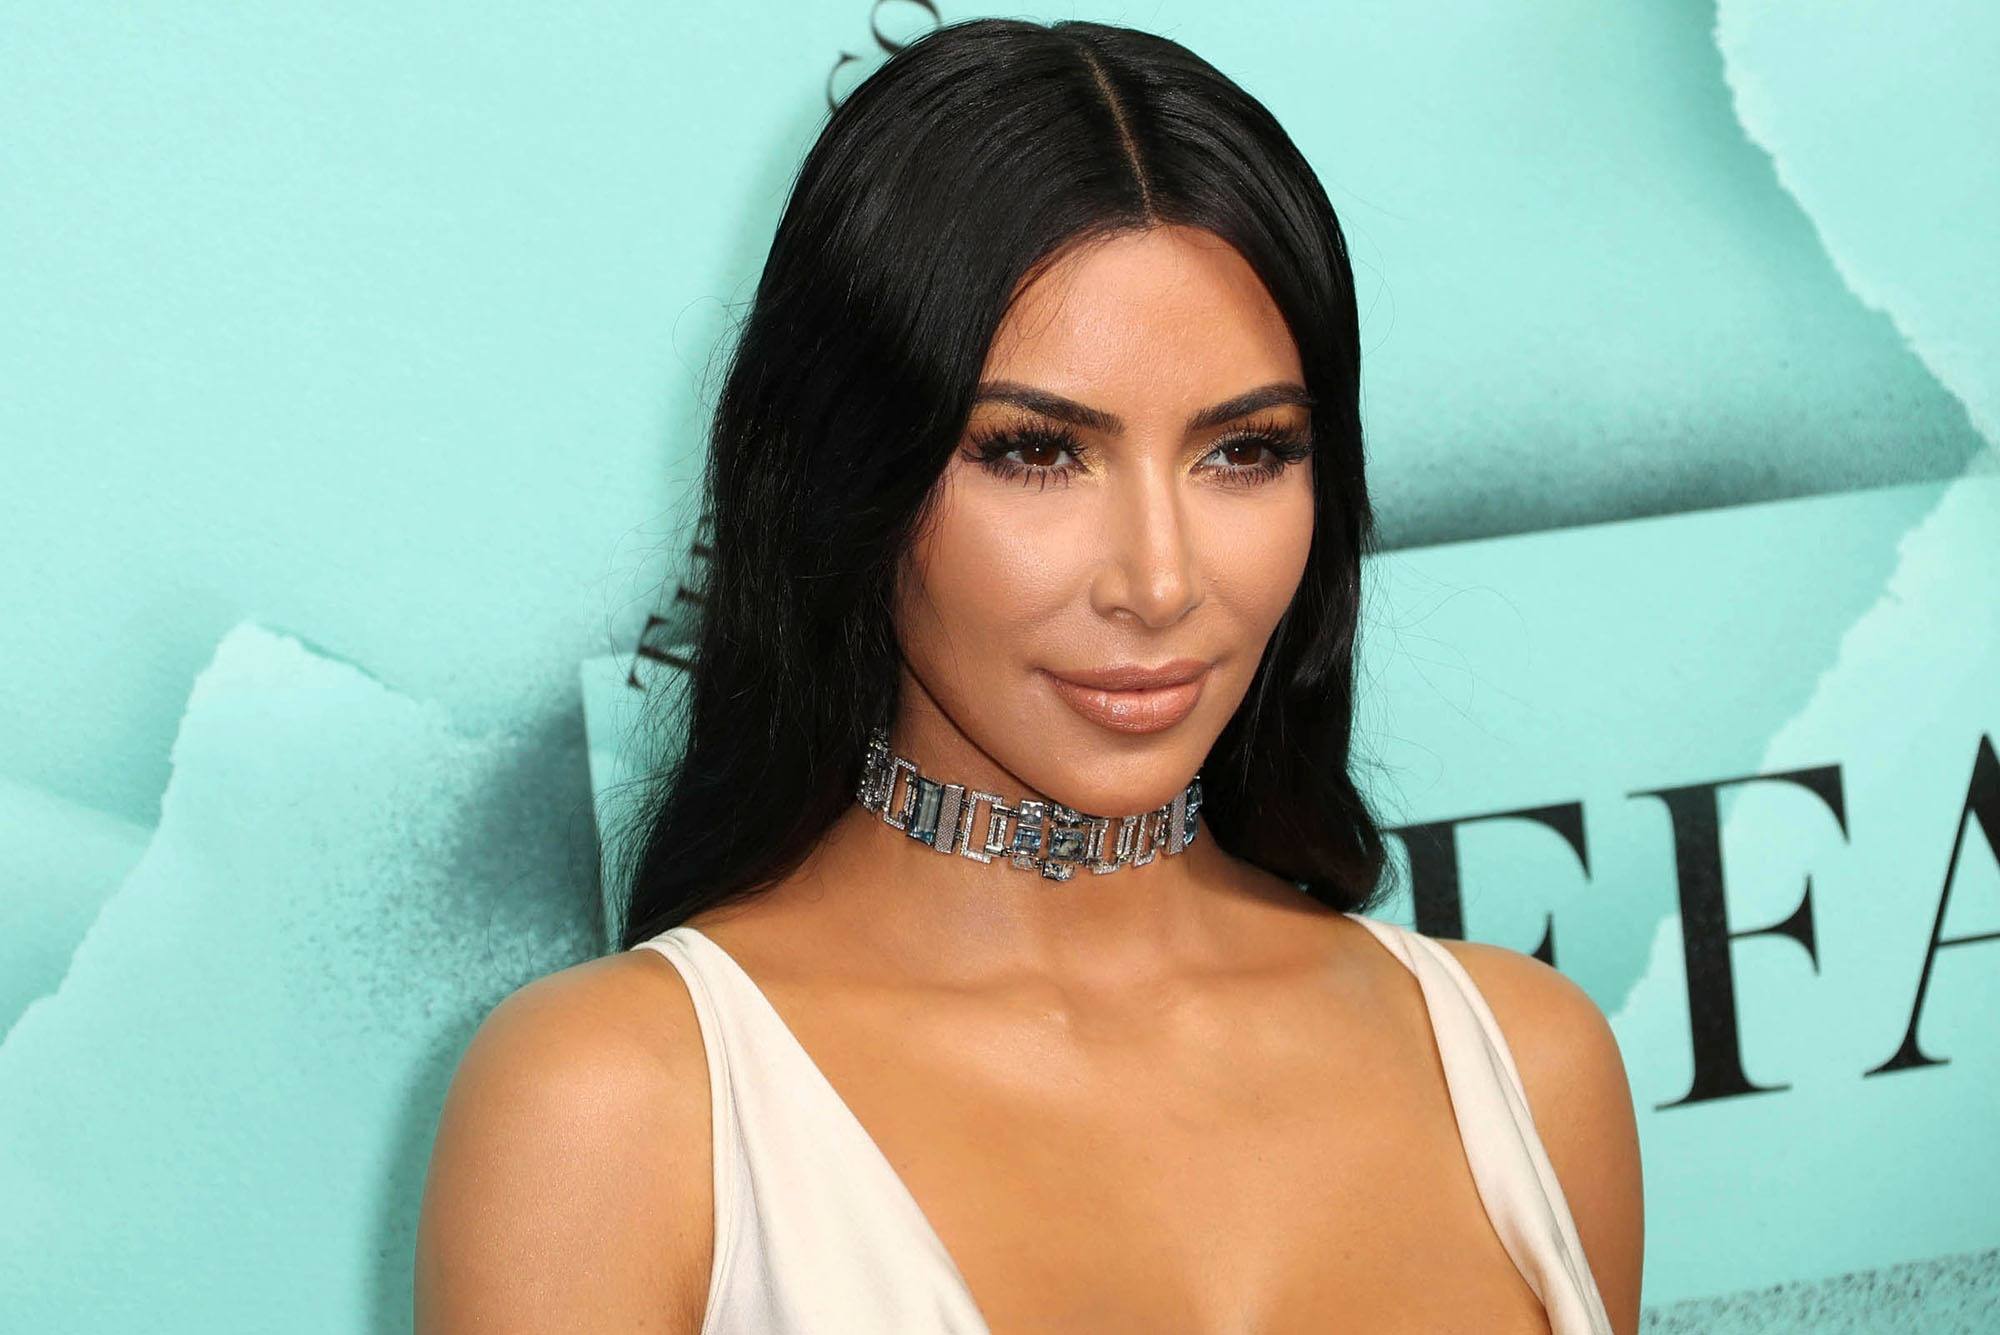 Kim Kardashian ven bosses utilitzades i tacades per internet